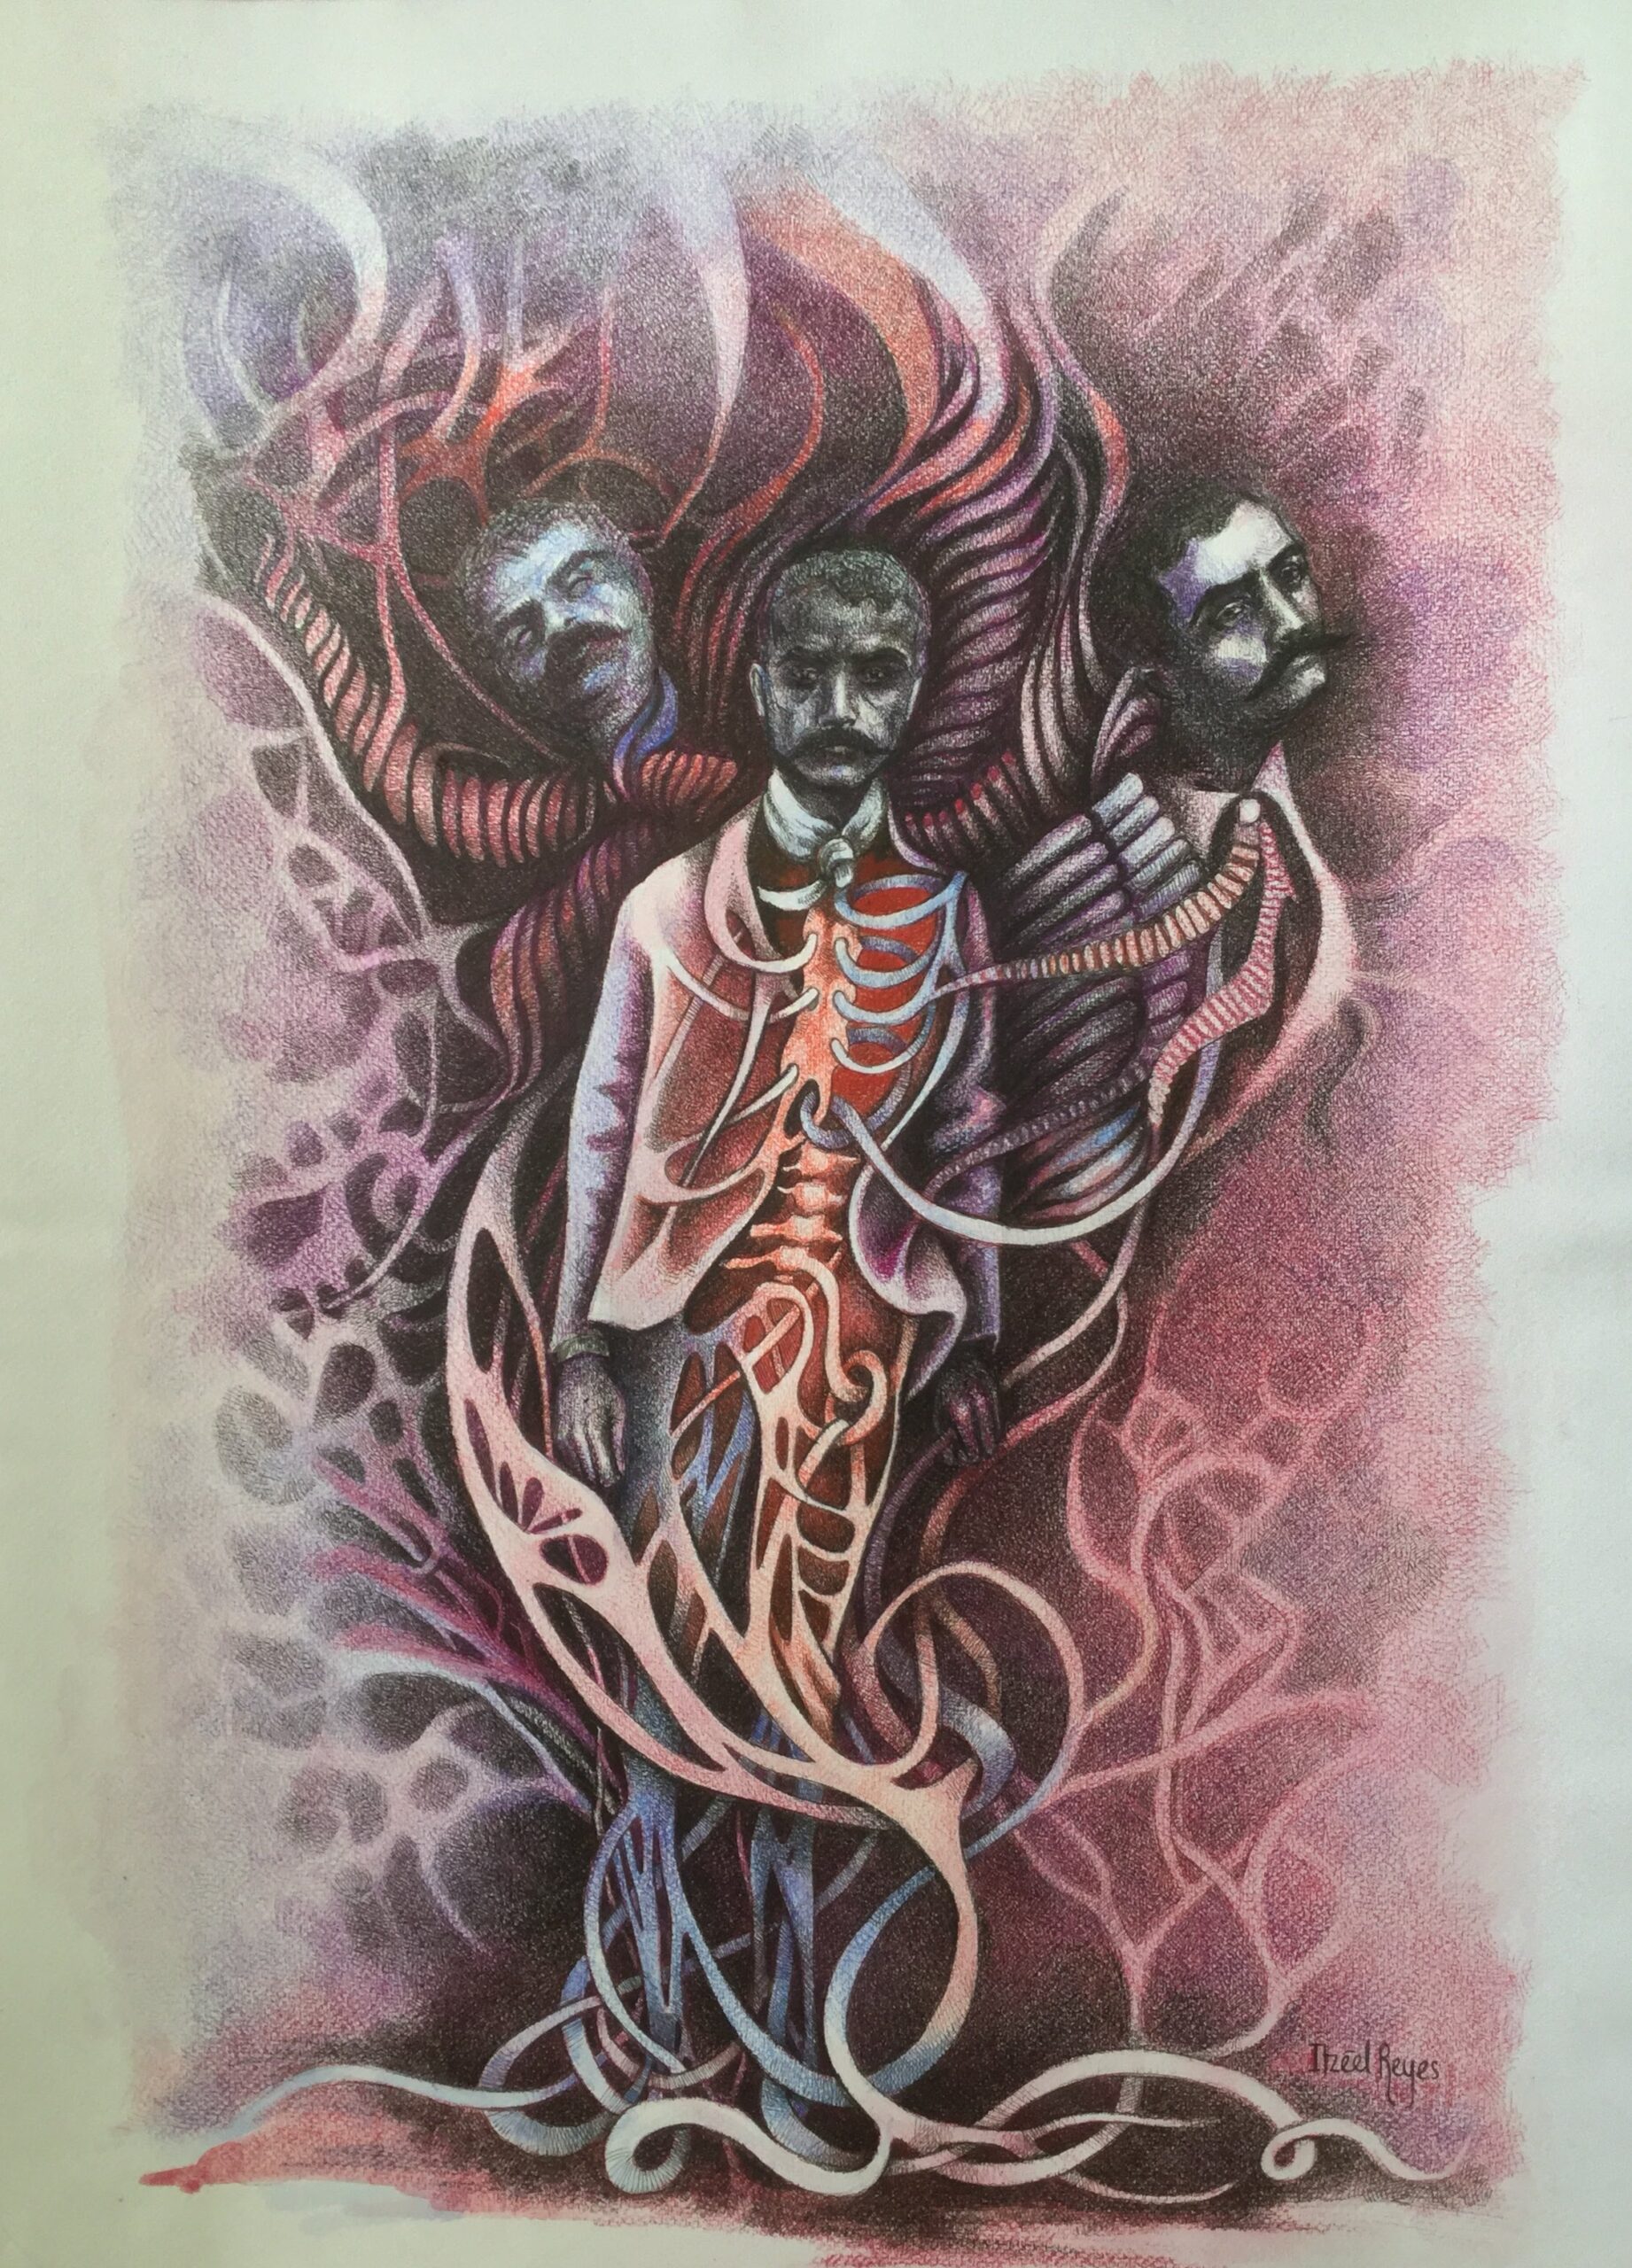 Título: “De raíz Zapatista”
Técnica: Mixta (Acuarela/ tinta china)
Medidas: 70 x 50 cm 
Autora: Itzeel Reyes